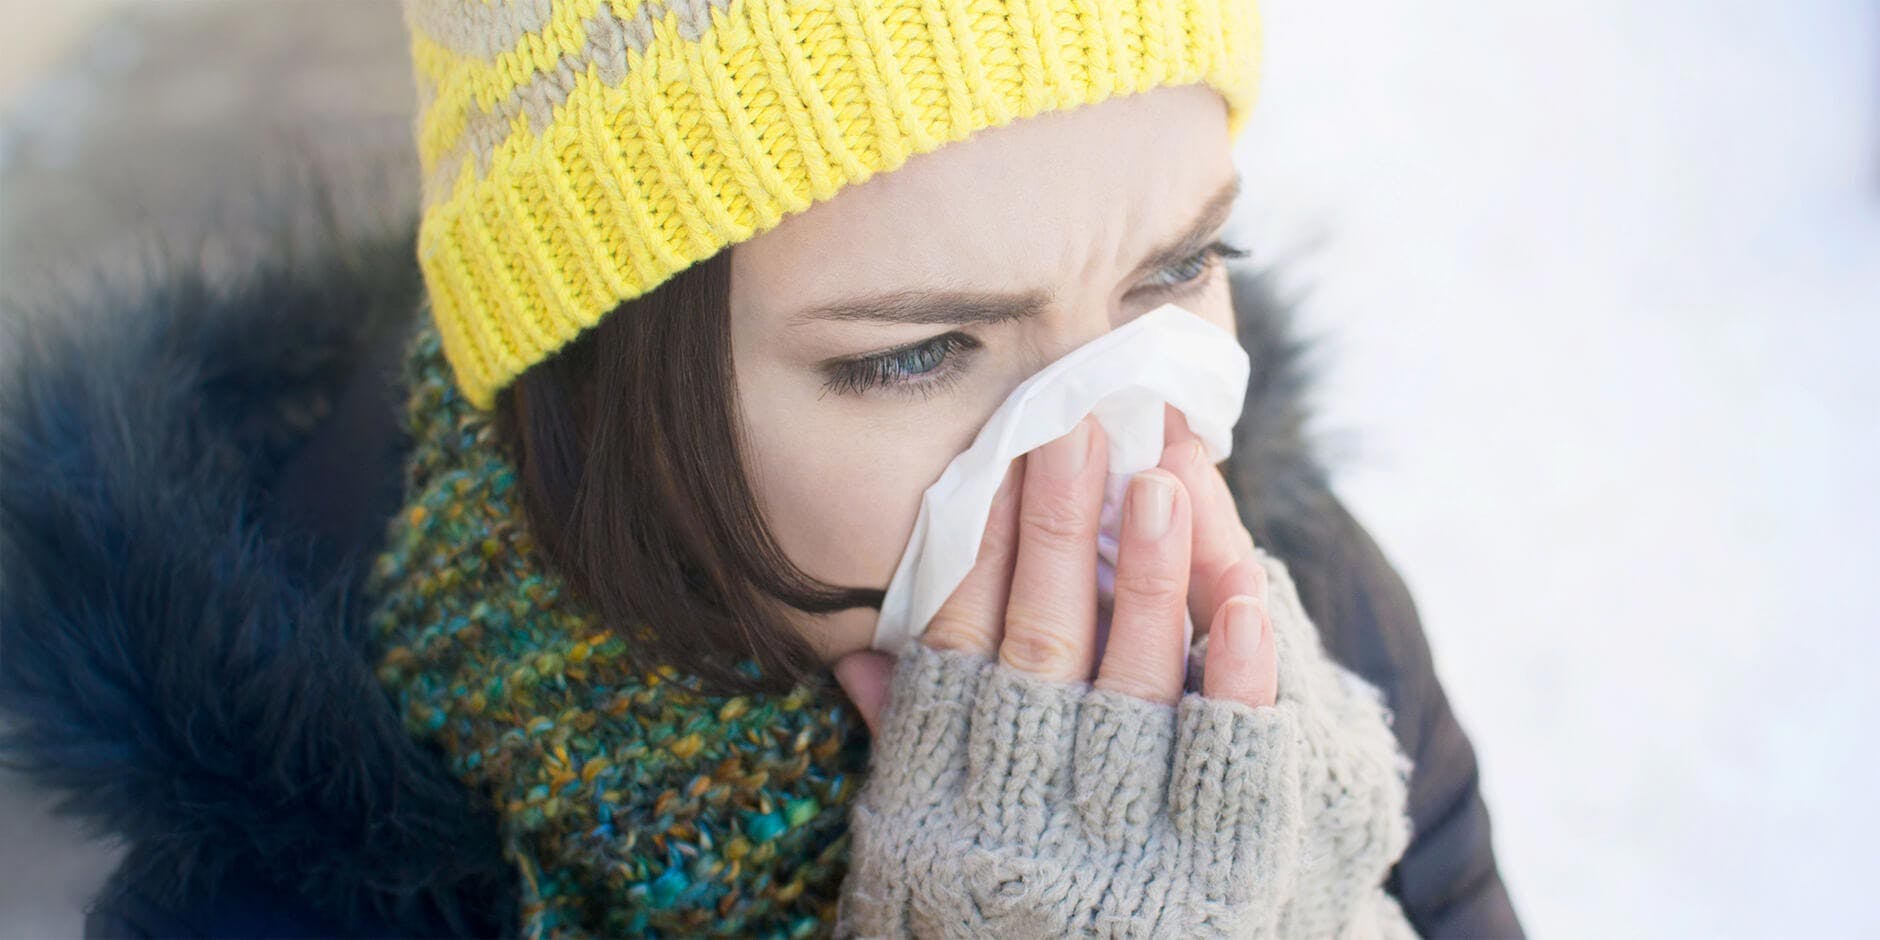 Egal unter welchen Erkältungssymptomen Sie leiden, ob eine laufende oder verstopfte Nase, ein Druck in den Nasennebenhöhlen oder Niesen, das passende Otriven-Produkt kann Ihre Symptome lindern.